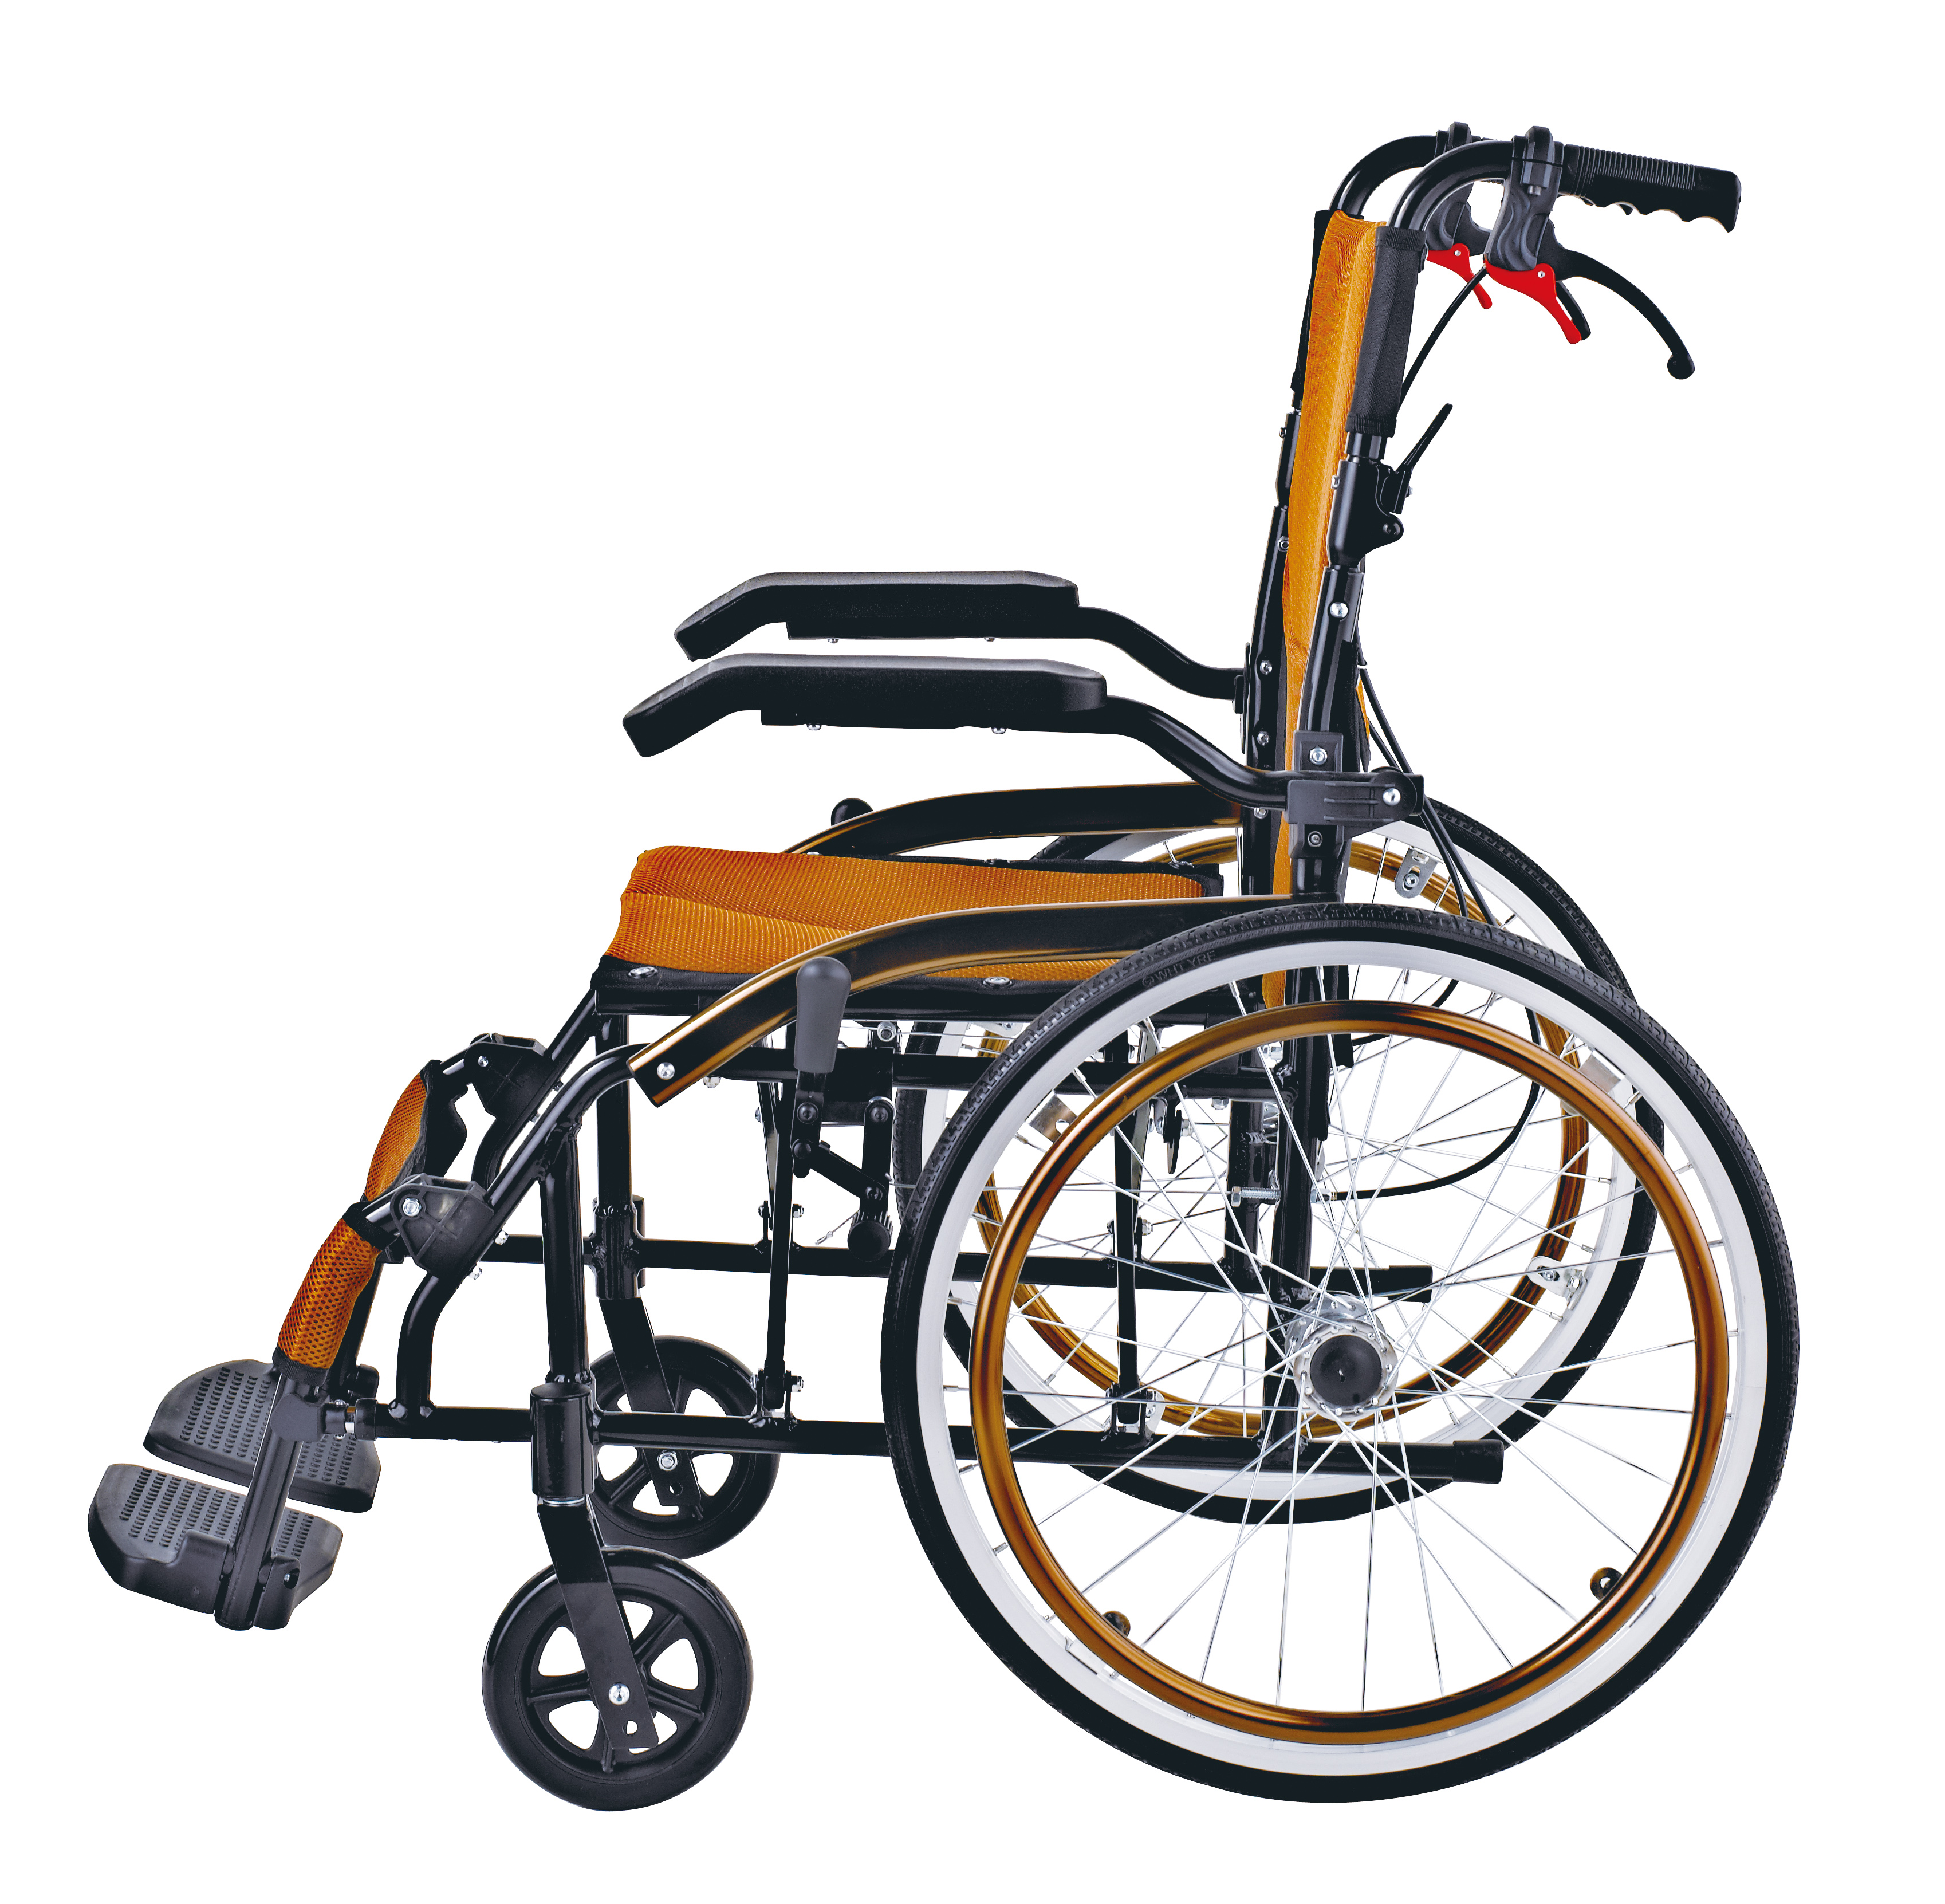 Comprar Cadeira de rodas dobrável portátil de alumínio,Cadeira de rodas dobrável portátil de alumínio Preço,Cadeira de rodas dobrável portátil de alumínio   Marcas,Cadeira de rodas dobrável portátil de alumínio Fabricante,Cadeira de rodas dobrável portátil de alumínio Mercado,Cadeira de rodas dobrável portátil de alumínio Companhia,